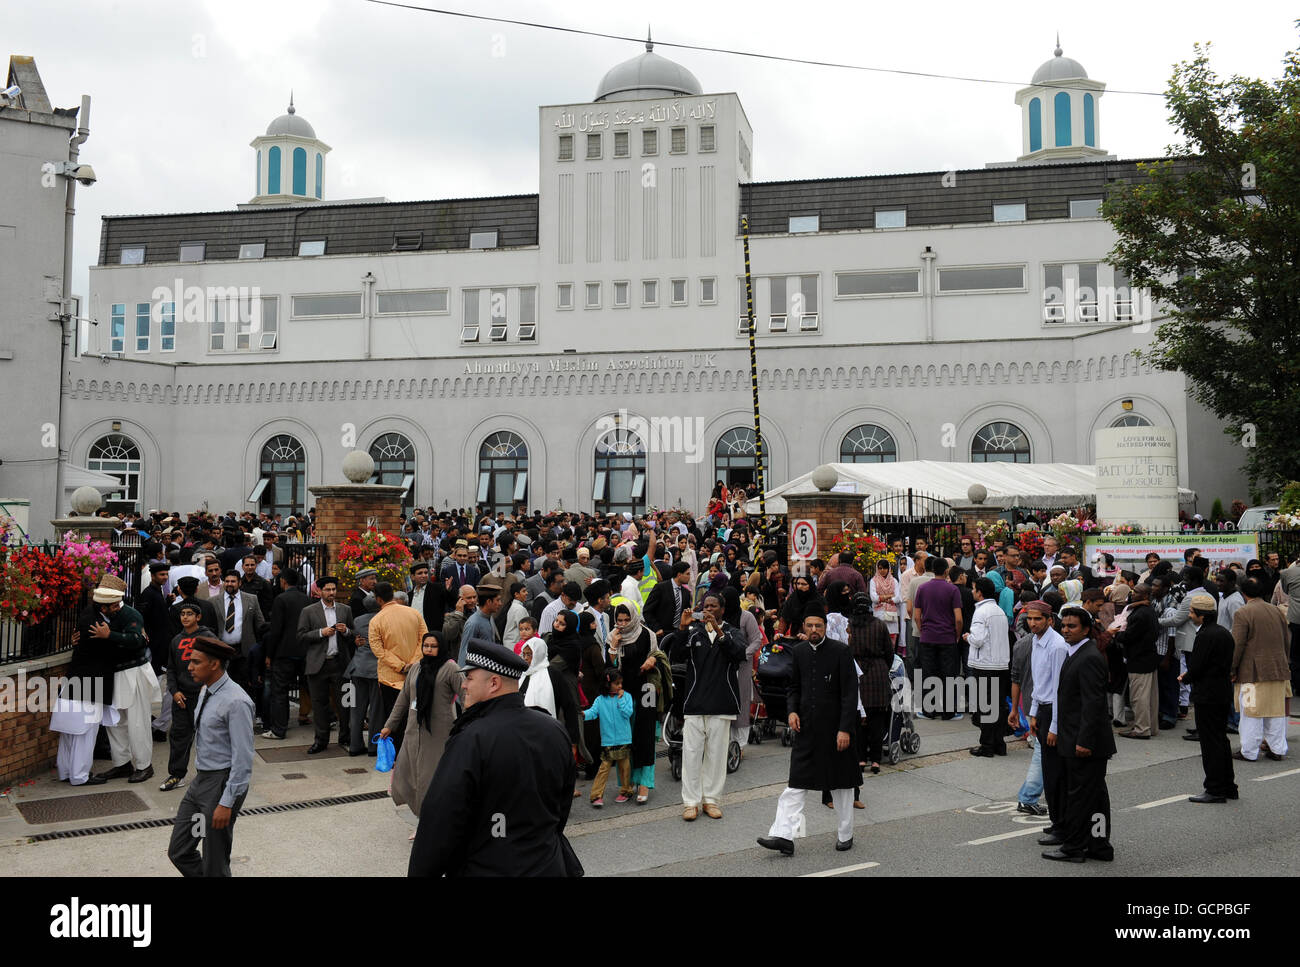 les musulmans Ahmadis quittent la mosquée Baitul Futuh à Morden, à Londres, la plus grande mosquée d'Europe occidentale, après avoir célébré avec prière Eid, au cours de laquelle plus de 10,000 fidèles ont reçu un sermon Eid vivant par le chef mondial de la communauté musulmane Ahmadiyya, sa Sainteté, Hadhrat Miza Masroor Ahmad. Le sermon a été télédiffusé en direct dans le monde entier et la communauté a également rendu hommage aux victimes des 9/11 villes d'Amérique, à l'occasion du neuvième anniversaire des attentats. Banque D'Images